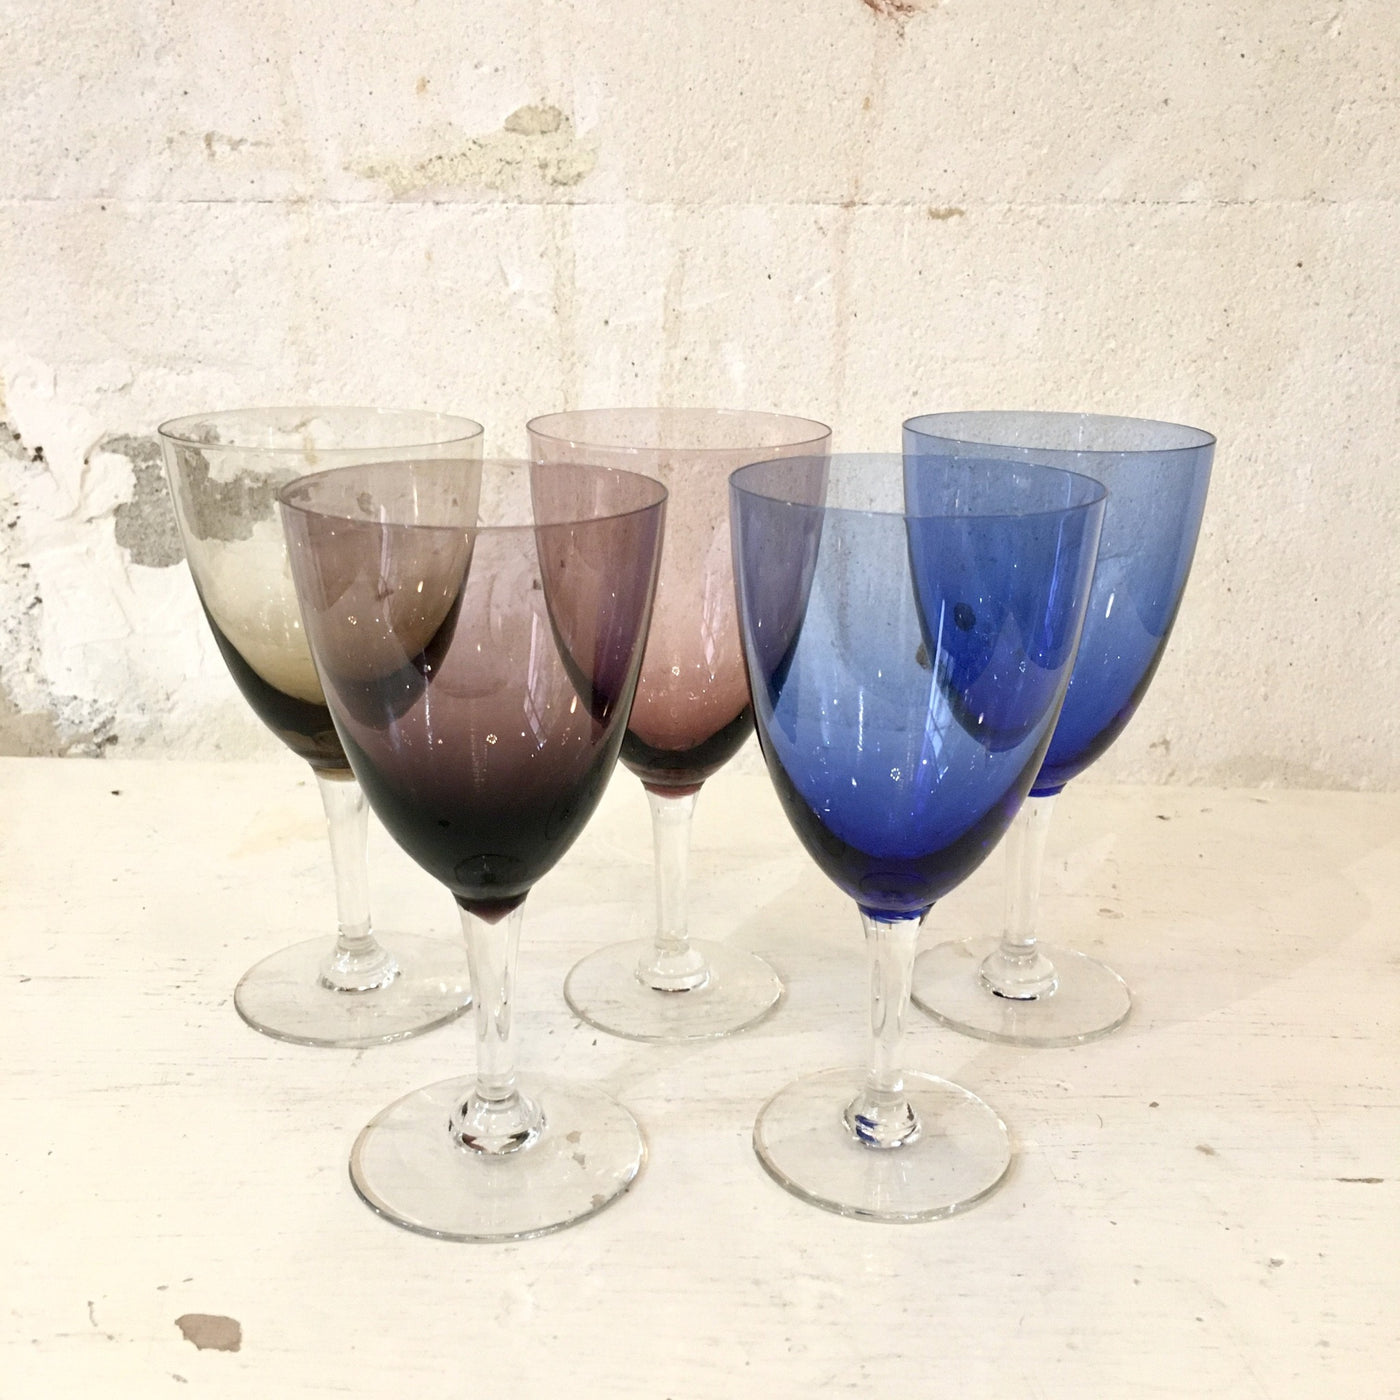 Ensemble de 5 verres colorés en cristal